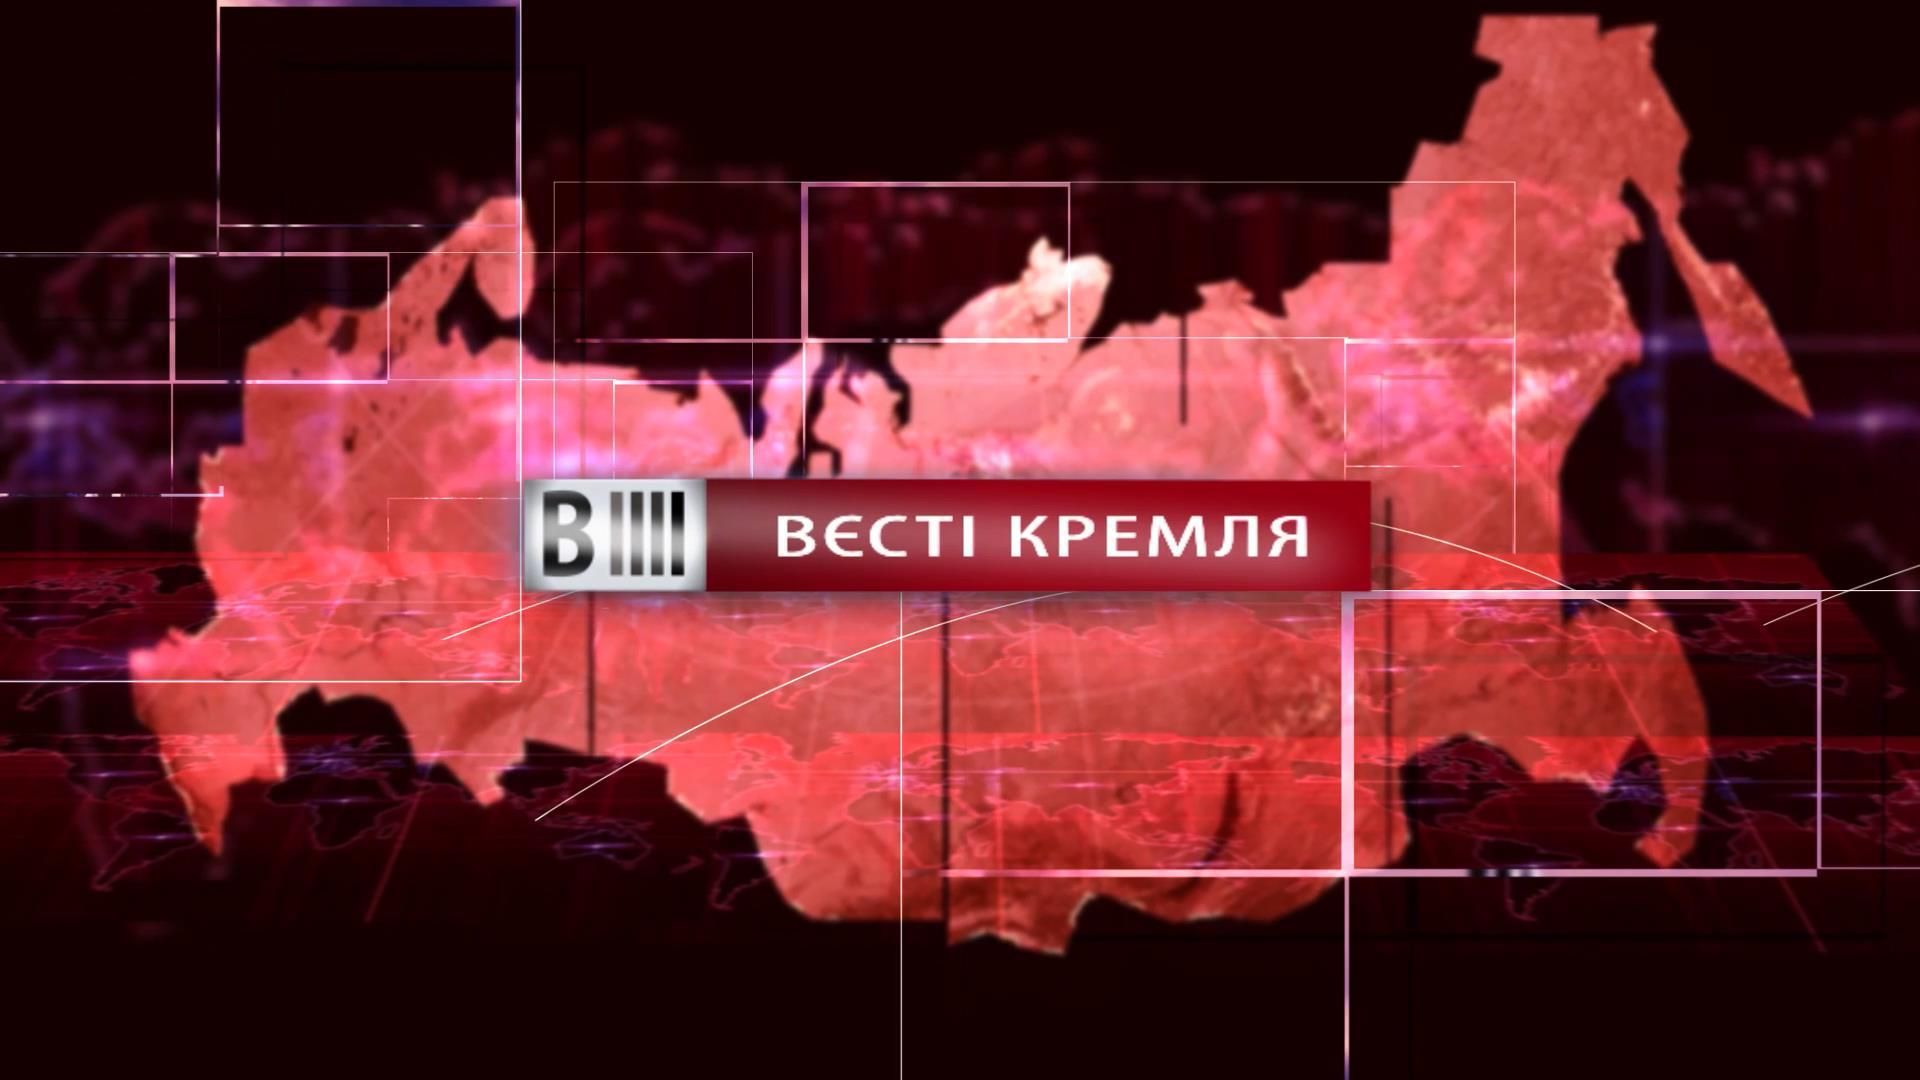 Смотрите "Вести Кремля". Зэки и государственный переворот в России. православный спорт